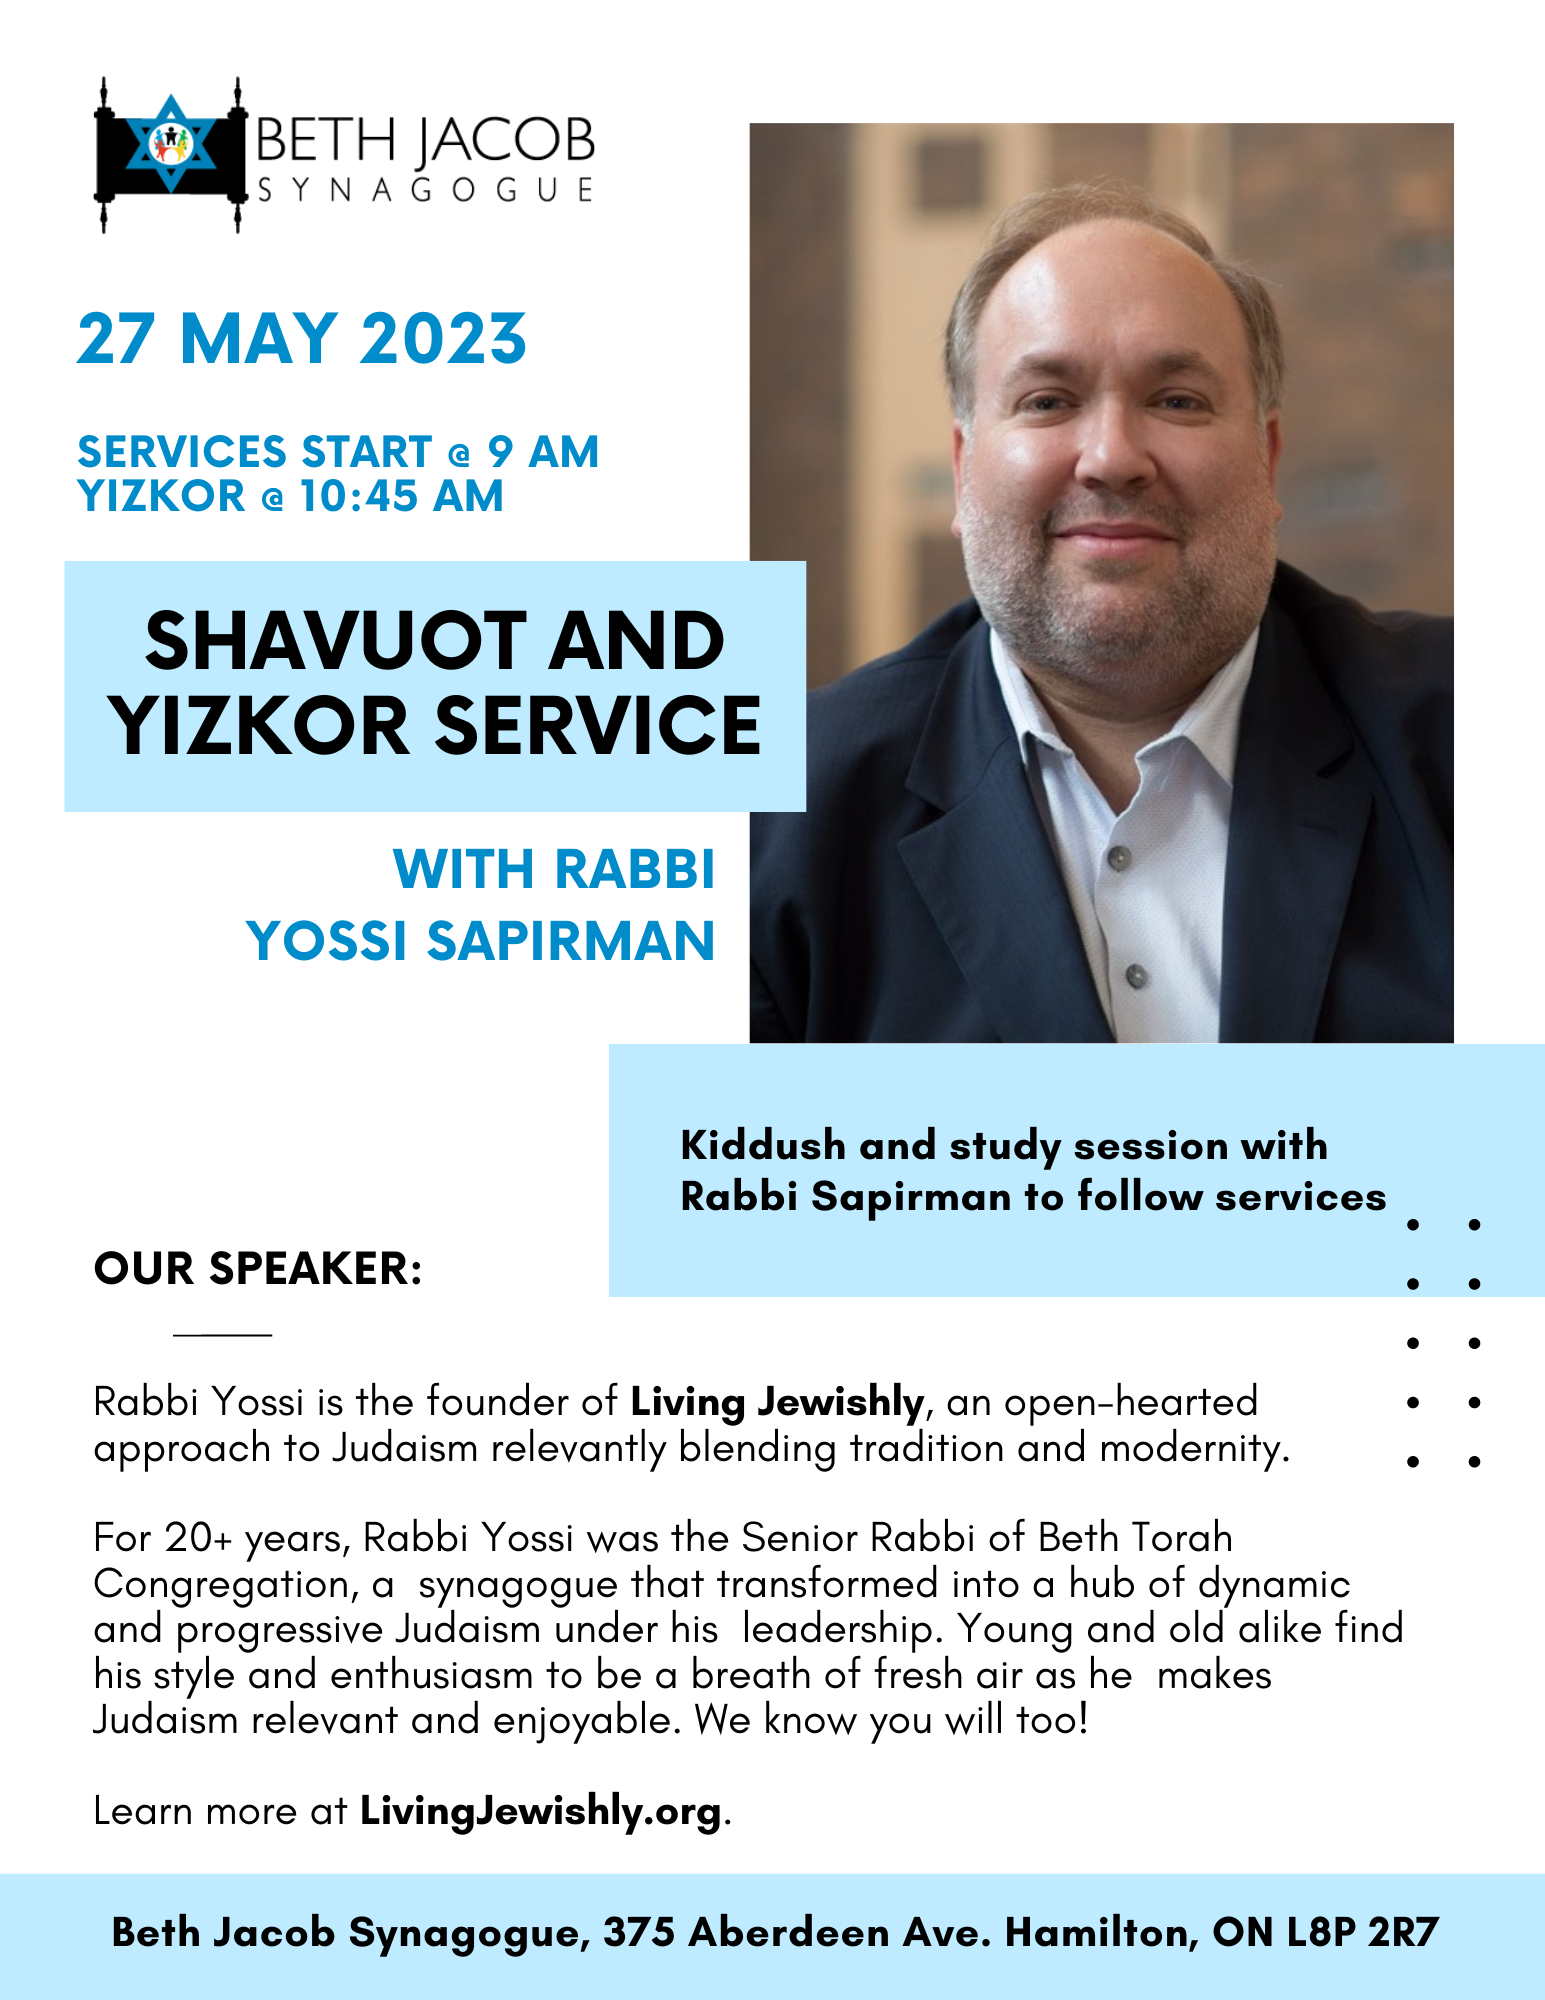 Rabbi Yossi Sapirman Shavuot and Yizkor Service